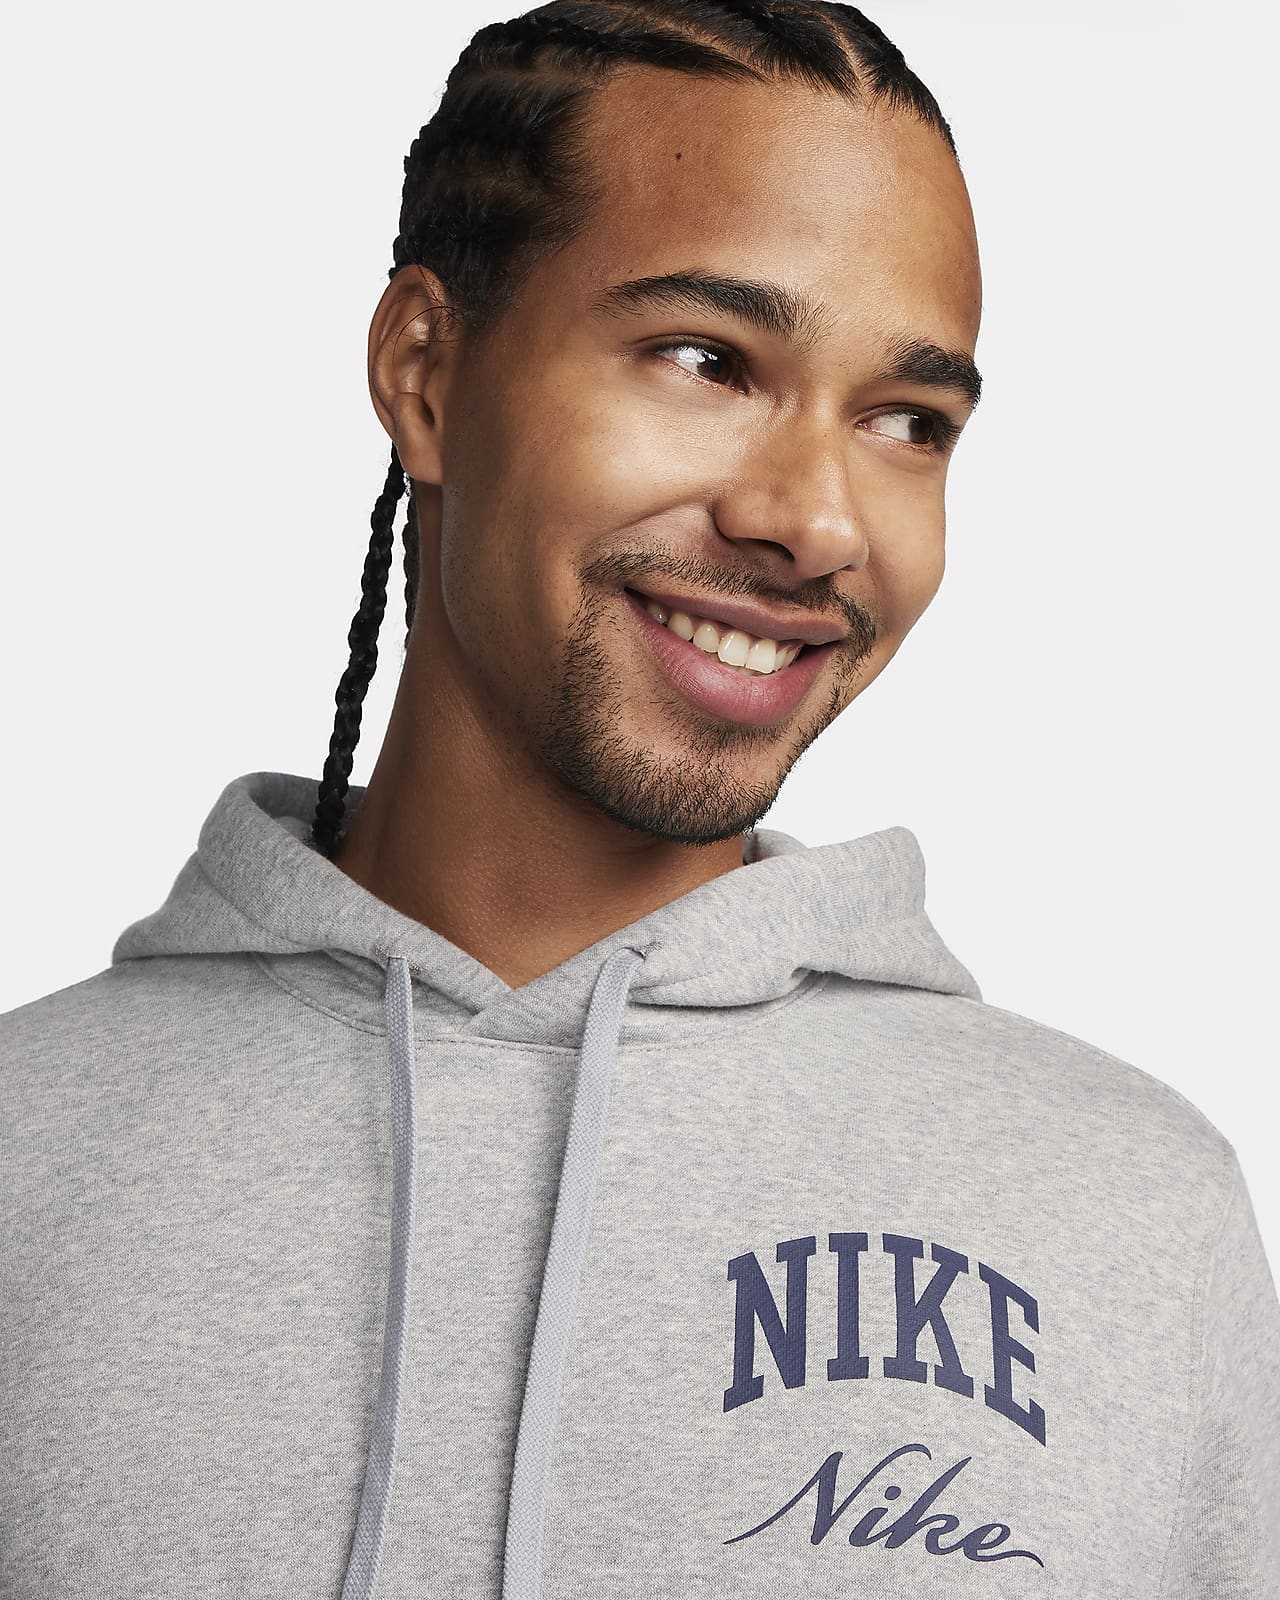 Nike Men's Sportswear Club Fleece Pullover Hoodie in Purple - ShopStyle